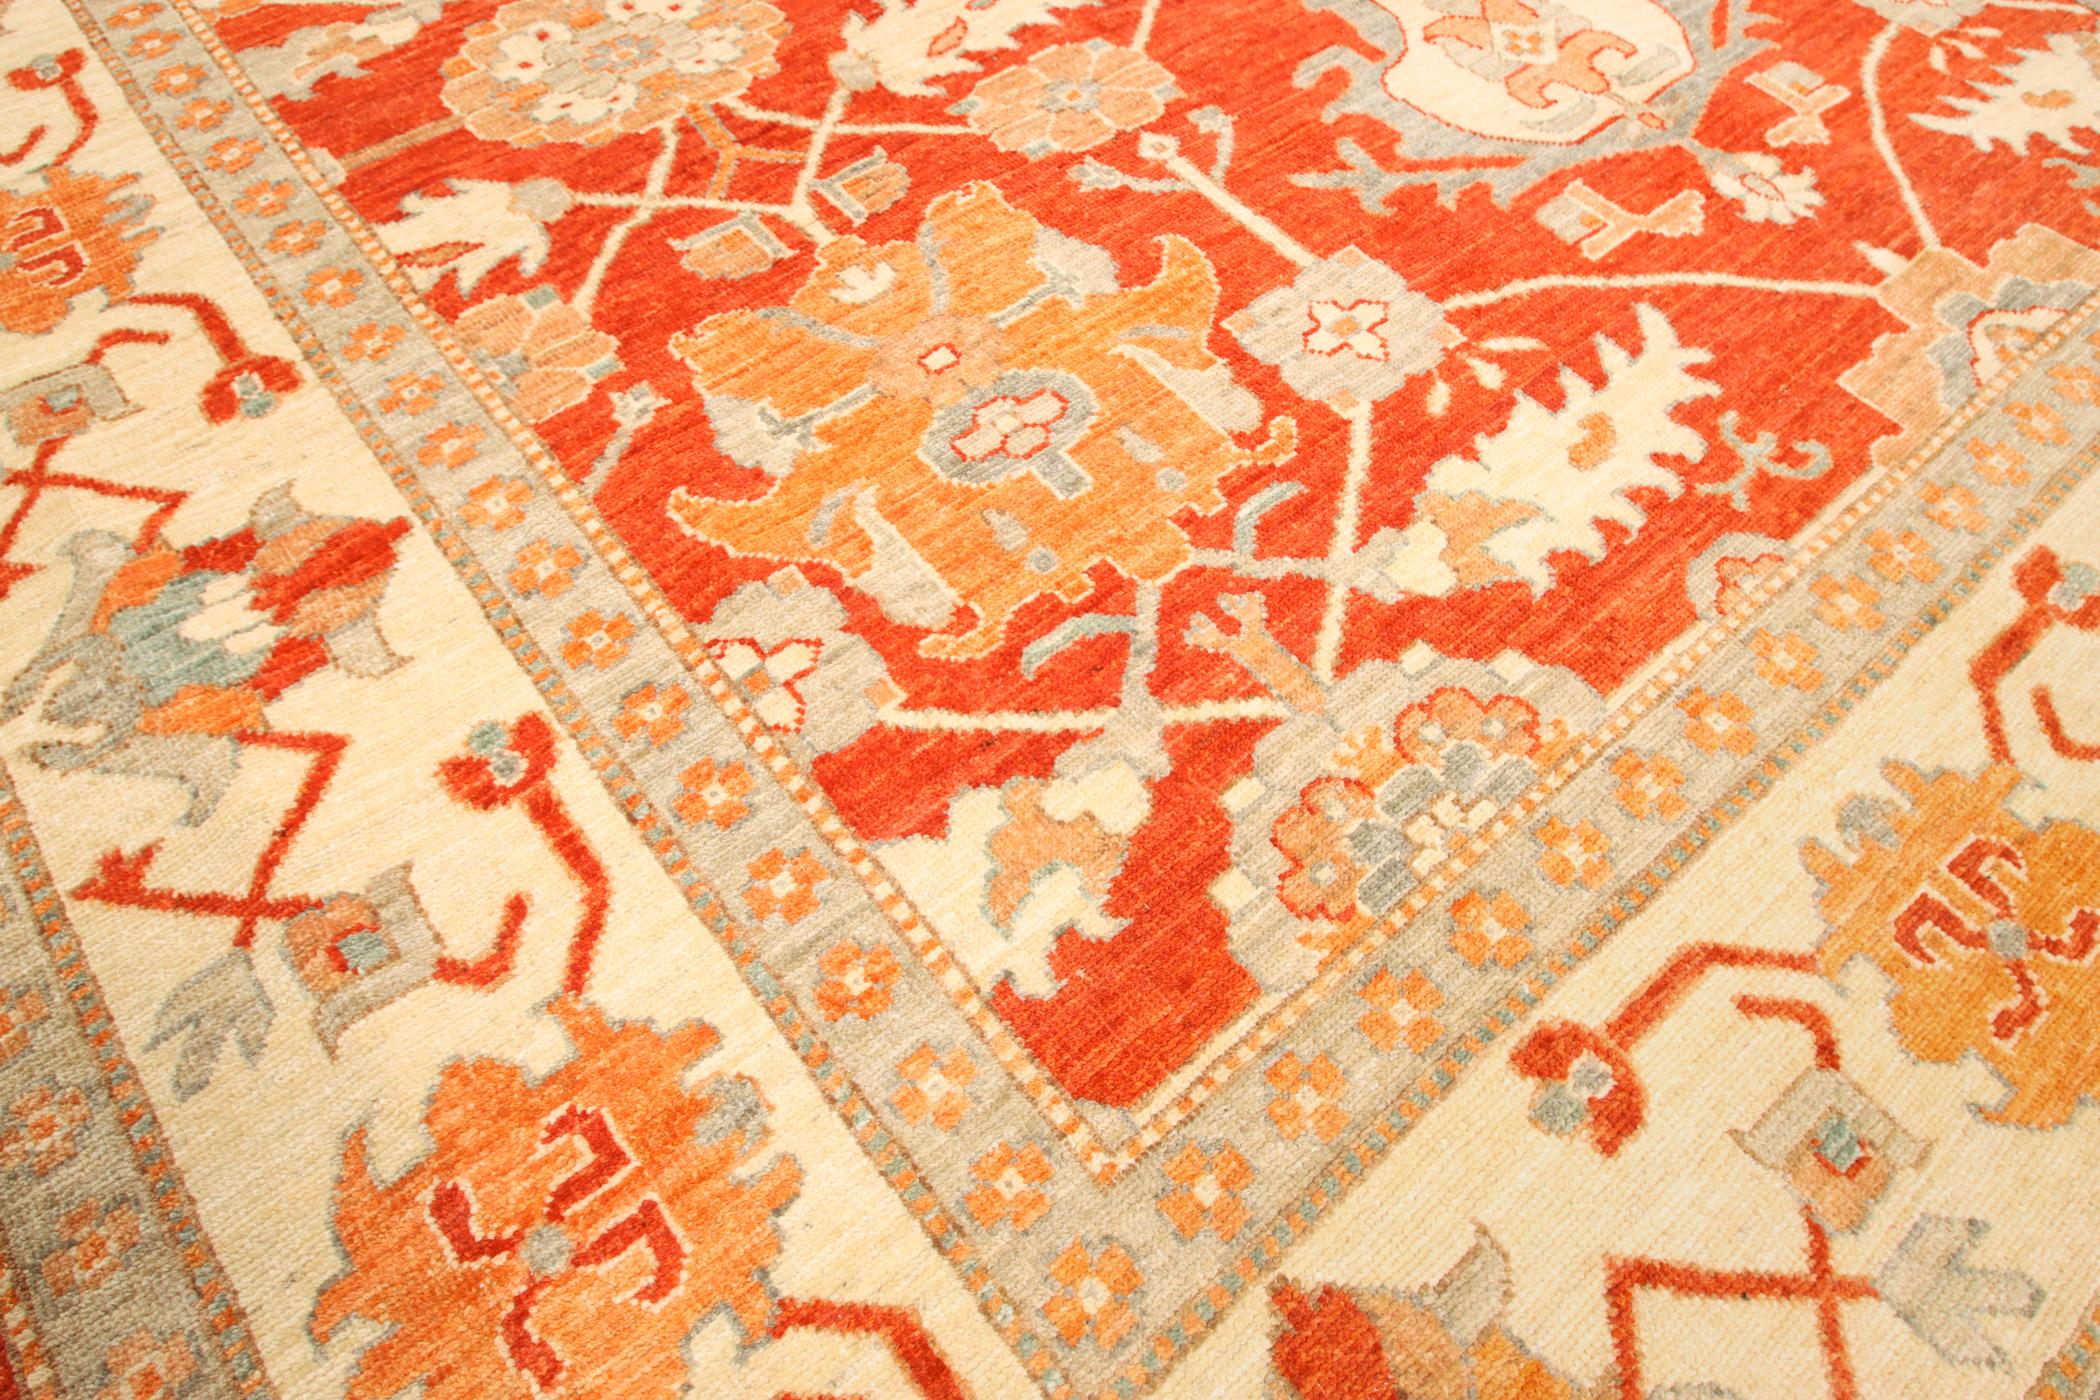 Schöne handgefertigte Teppiche von Turkoman Knüpfern in Afghanistan alle natürlichen Farben und handgesponnene Wolle.
Teppich im Ushak-Stil.